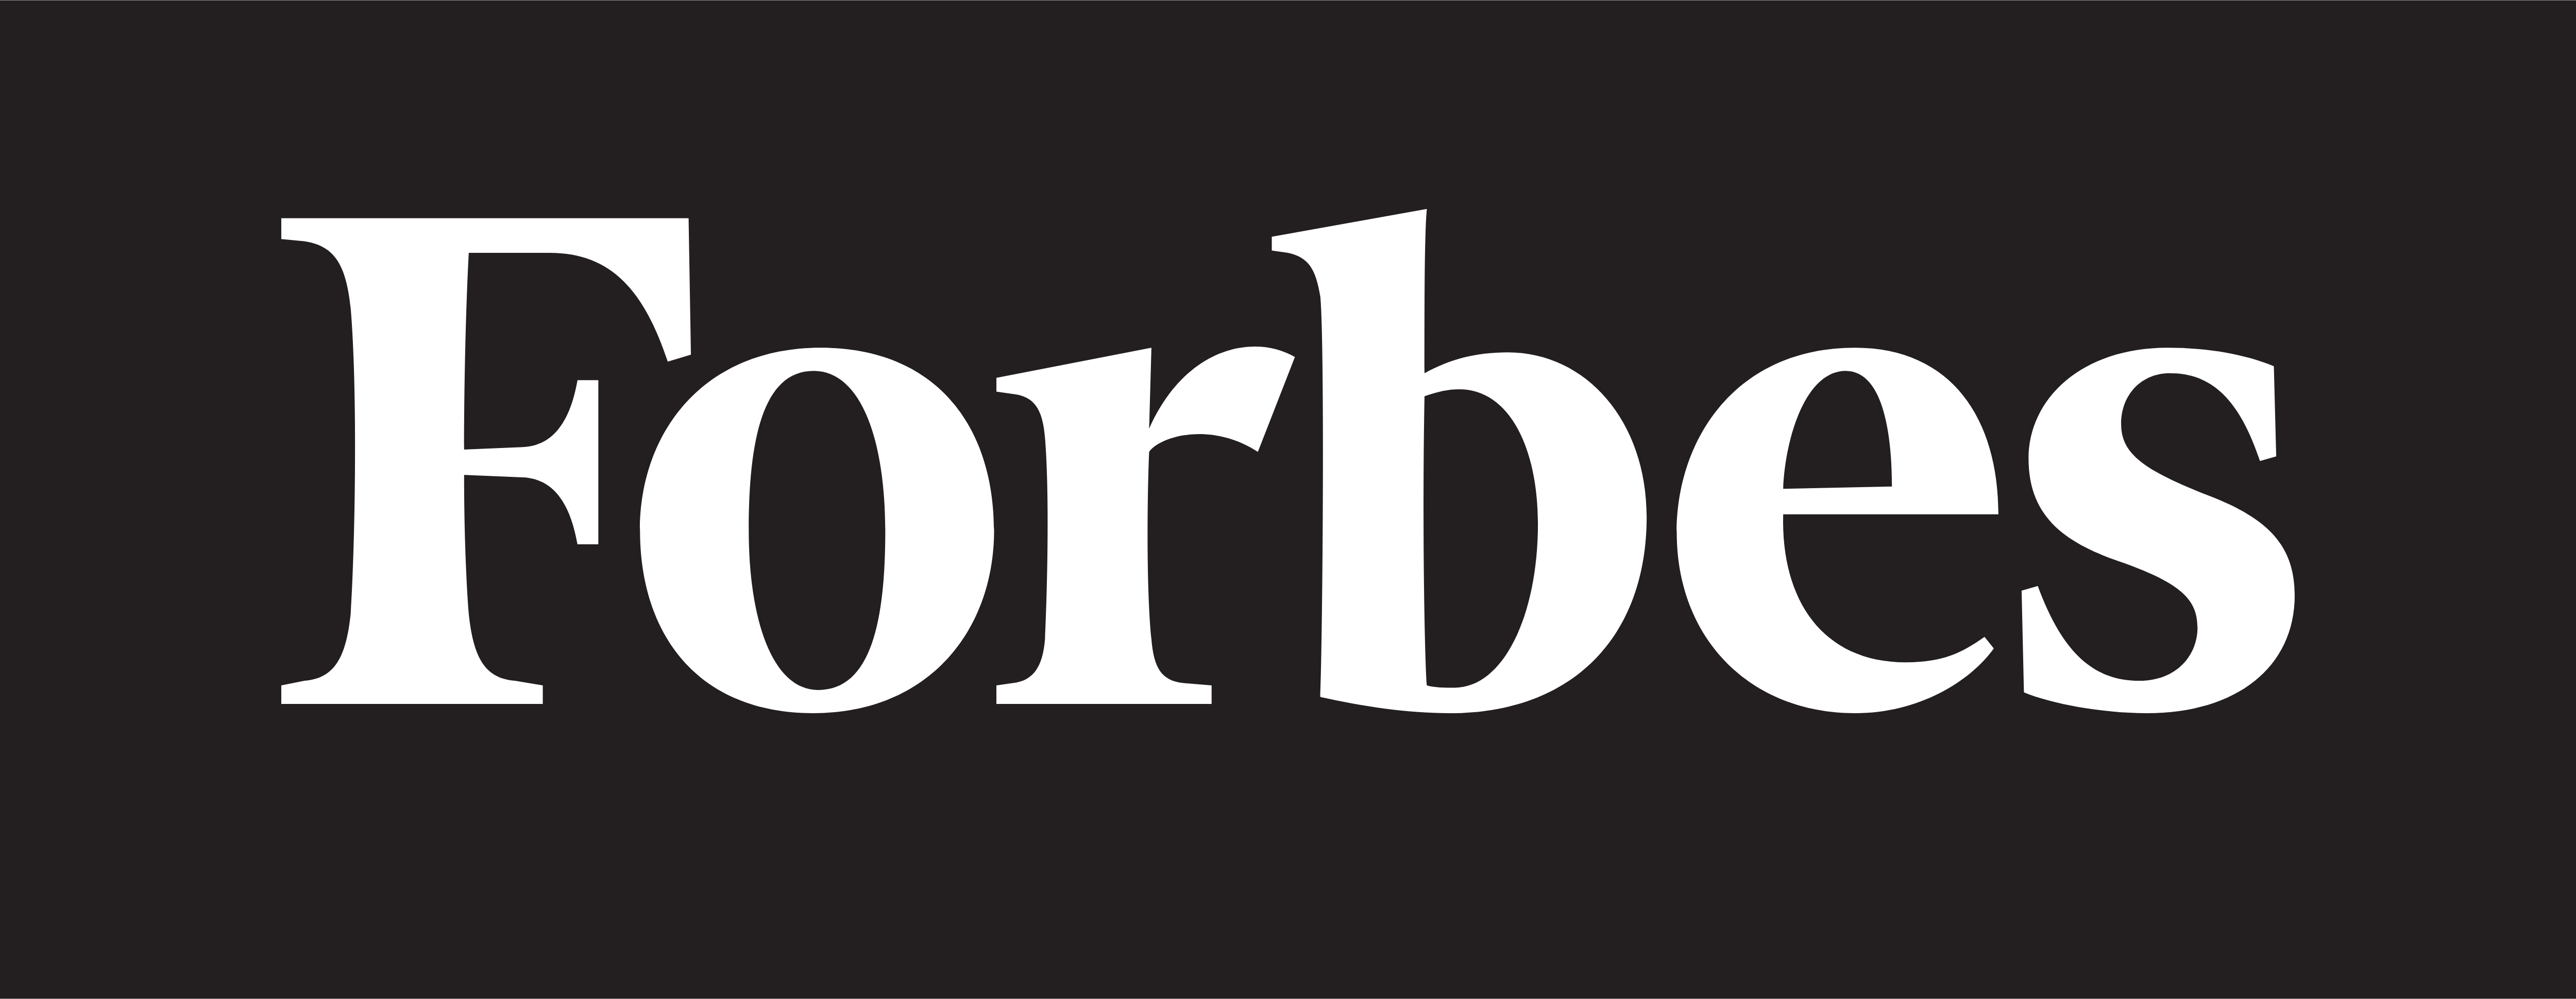 Forbes – Logók letöltése